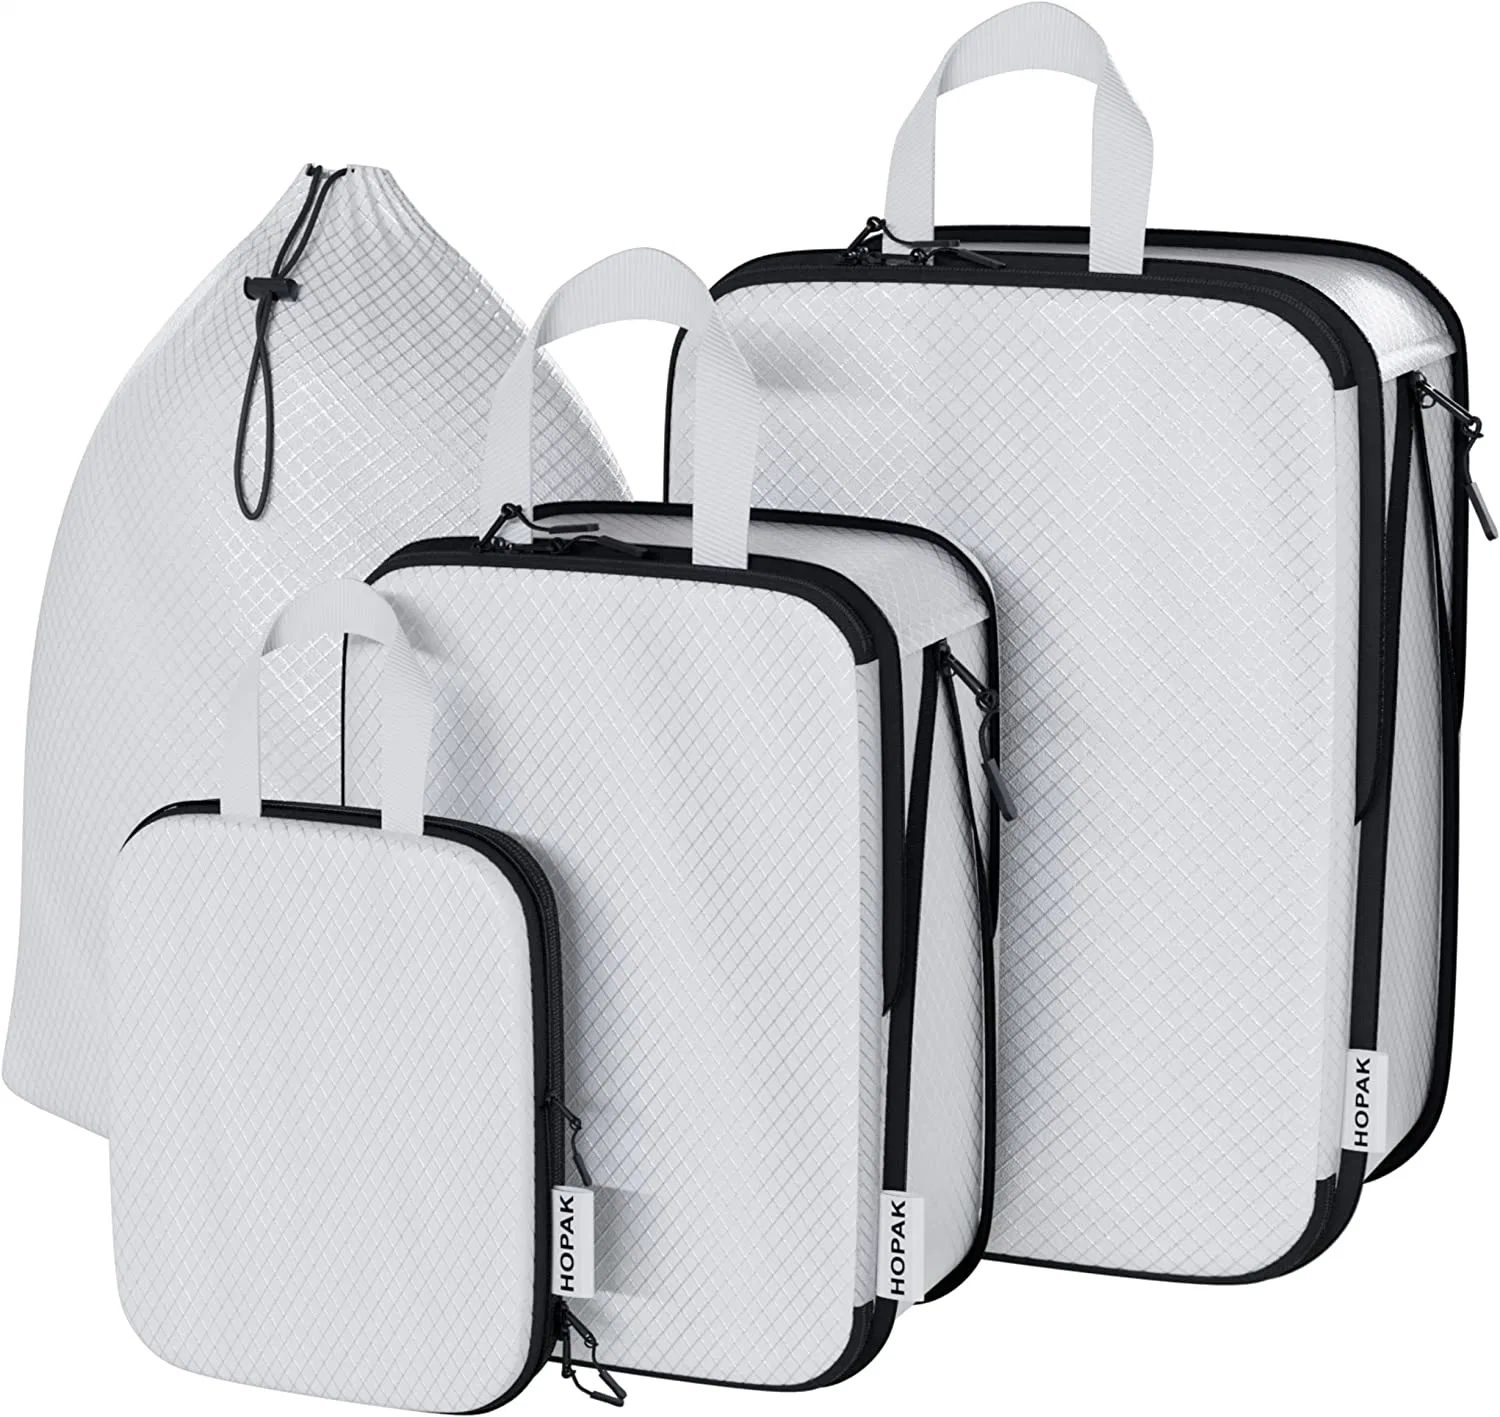 3pcs Gepäcksets mit Kordelzug Tasche - Doppel-Reißverschluss Kompression System Packing Cubes for Travel - Lagerwürfel